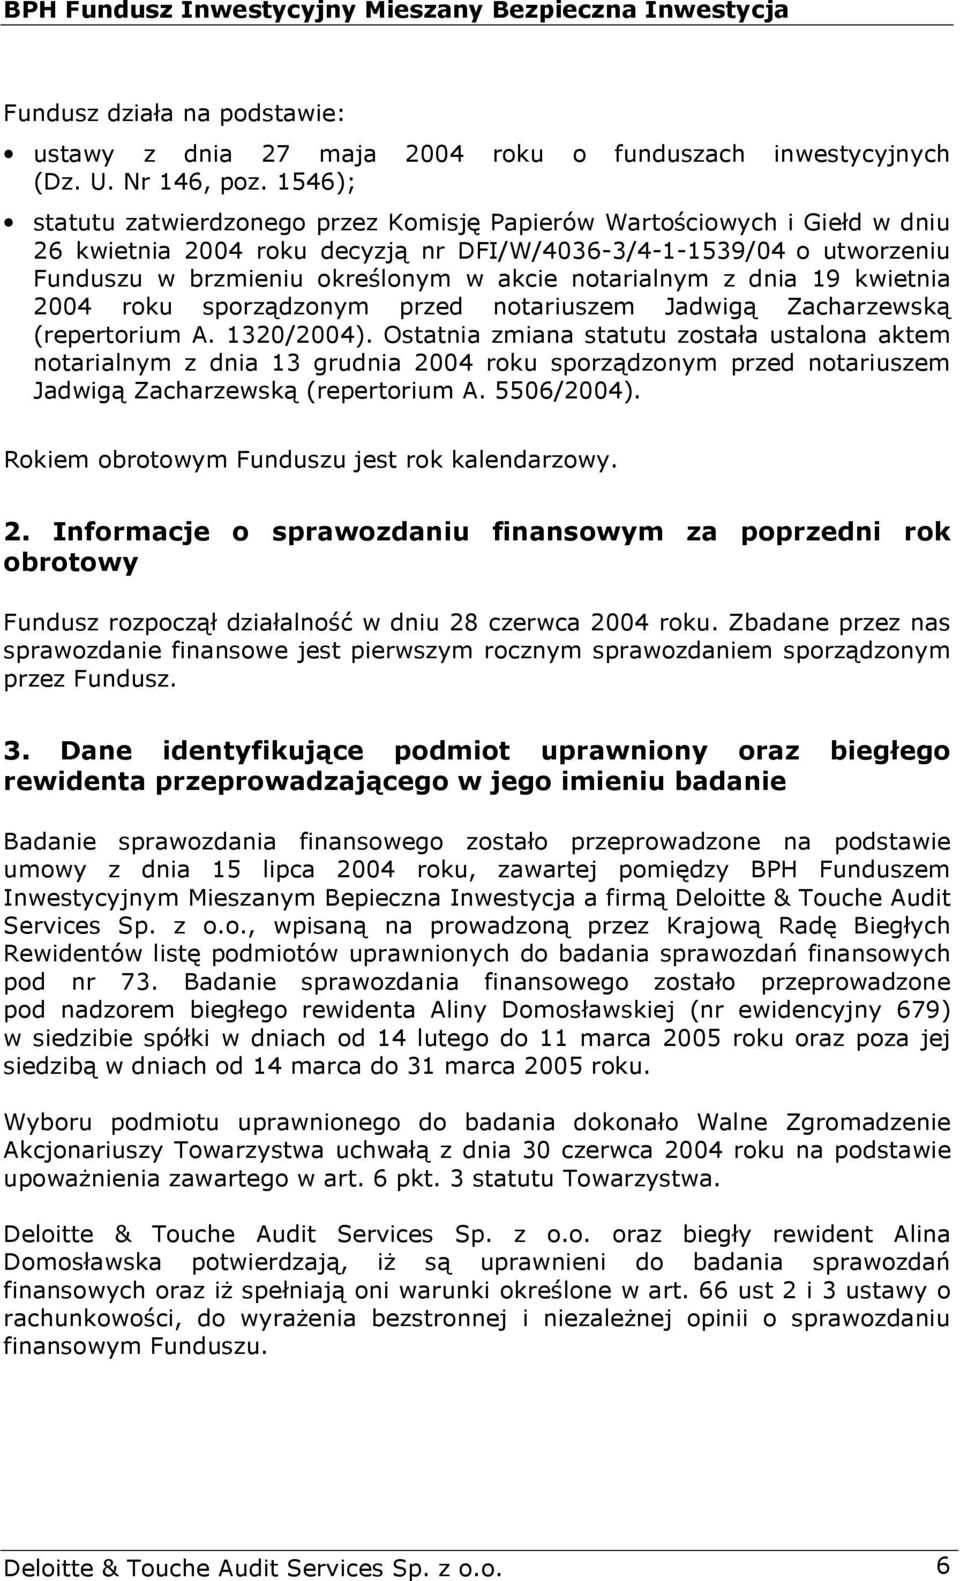 notarialnym z dnia 19 kwietnia 2004 roku sporządzonym przed notariuszem Jadwigą Zacharzewską (repertorium A. 1320/2004).